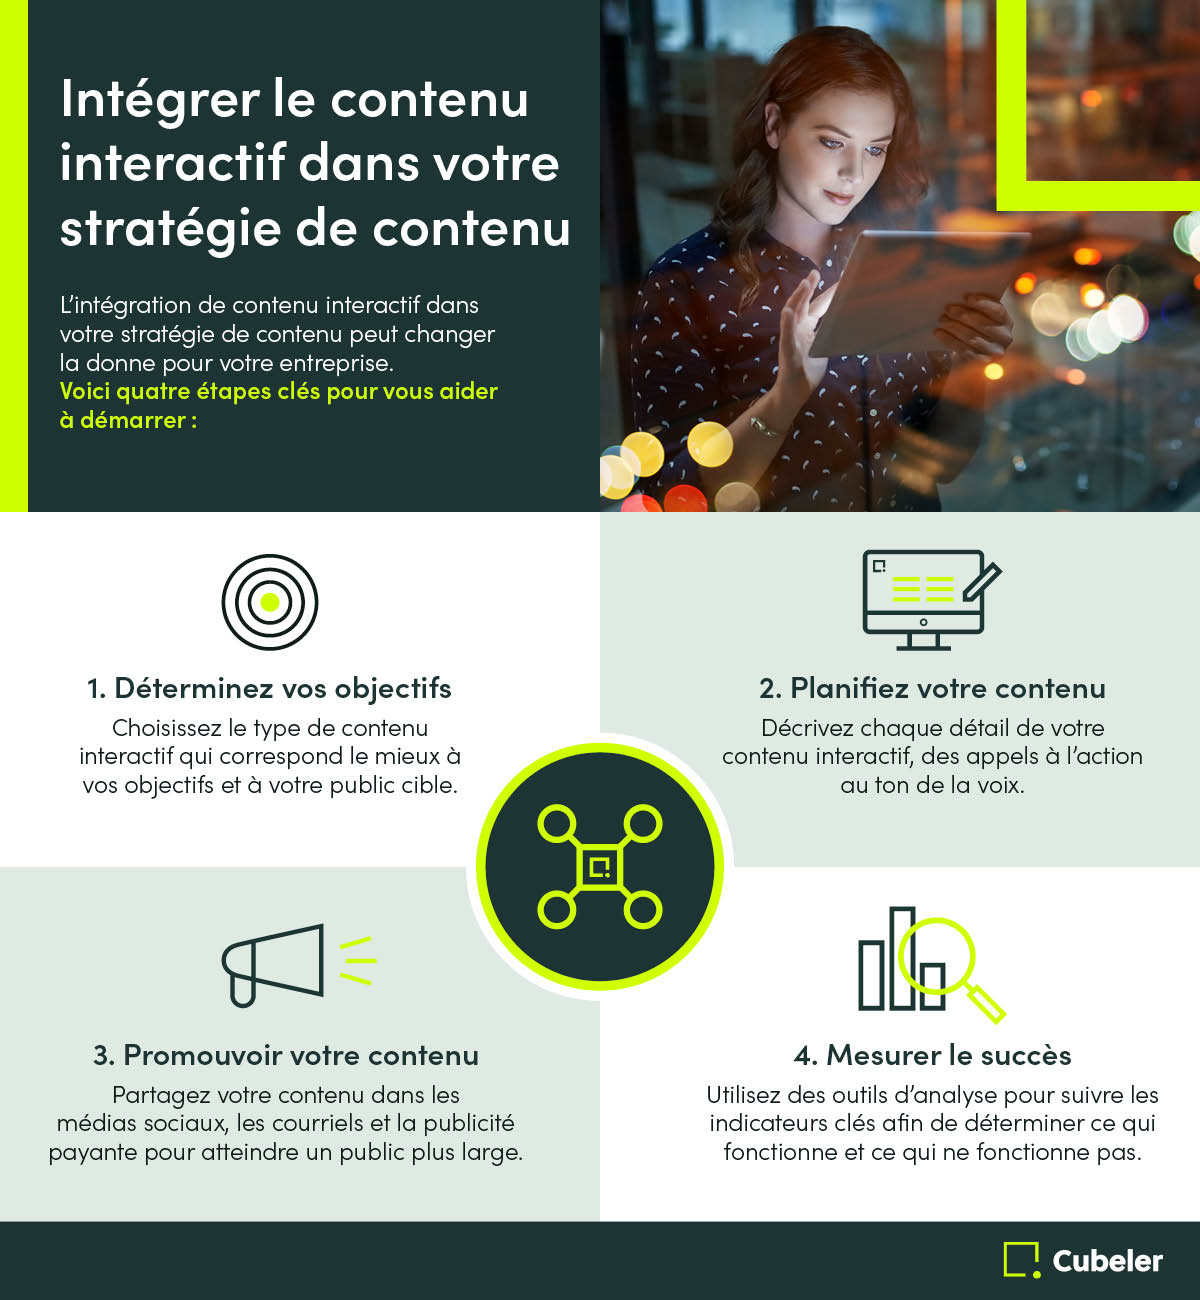 Intégrer le contenu interactif dans votre stratégie de contenu